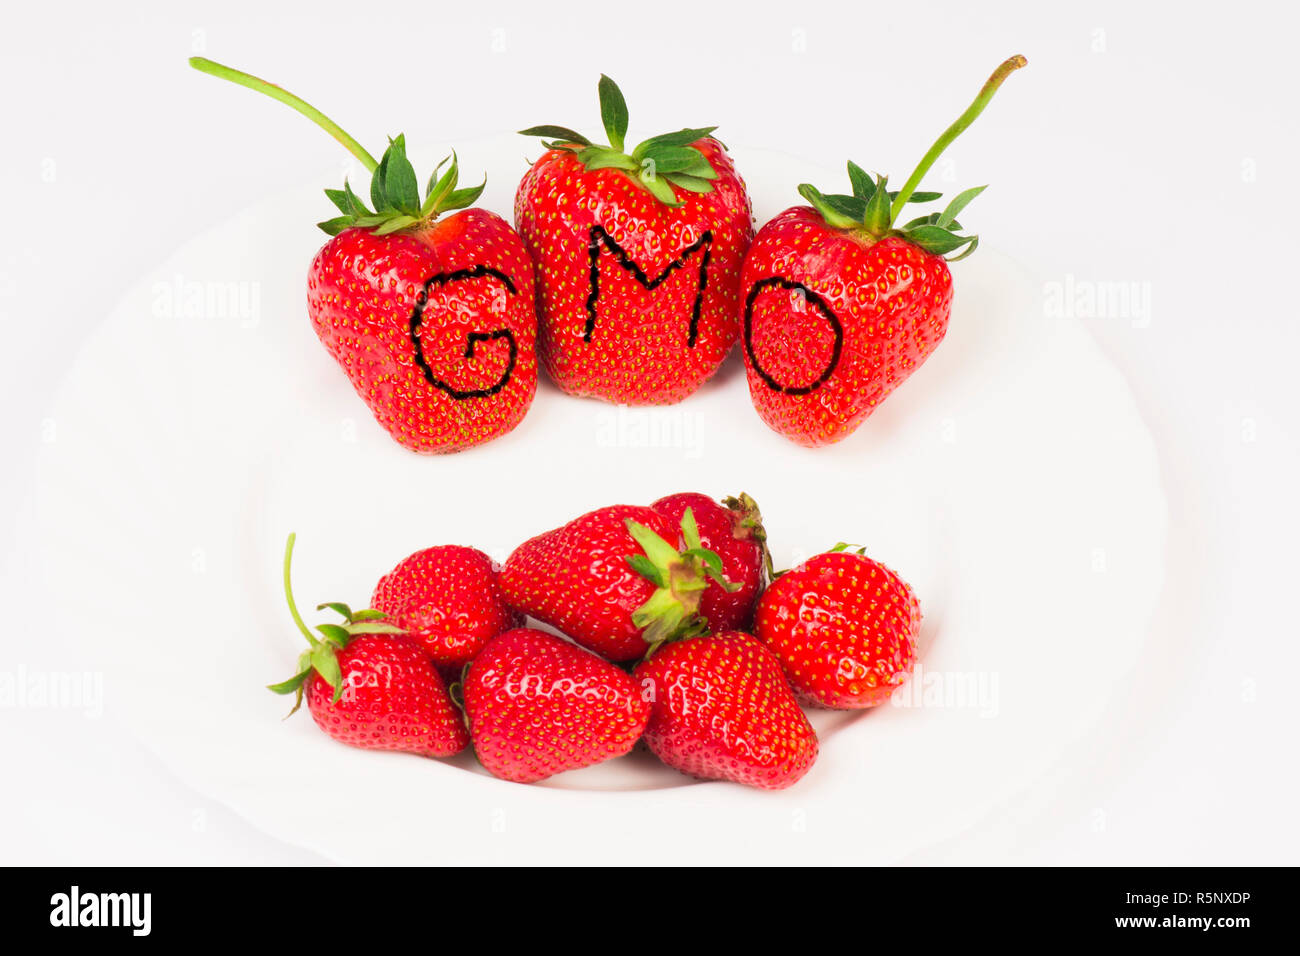 GMO huge strawberries Stock Photo